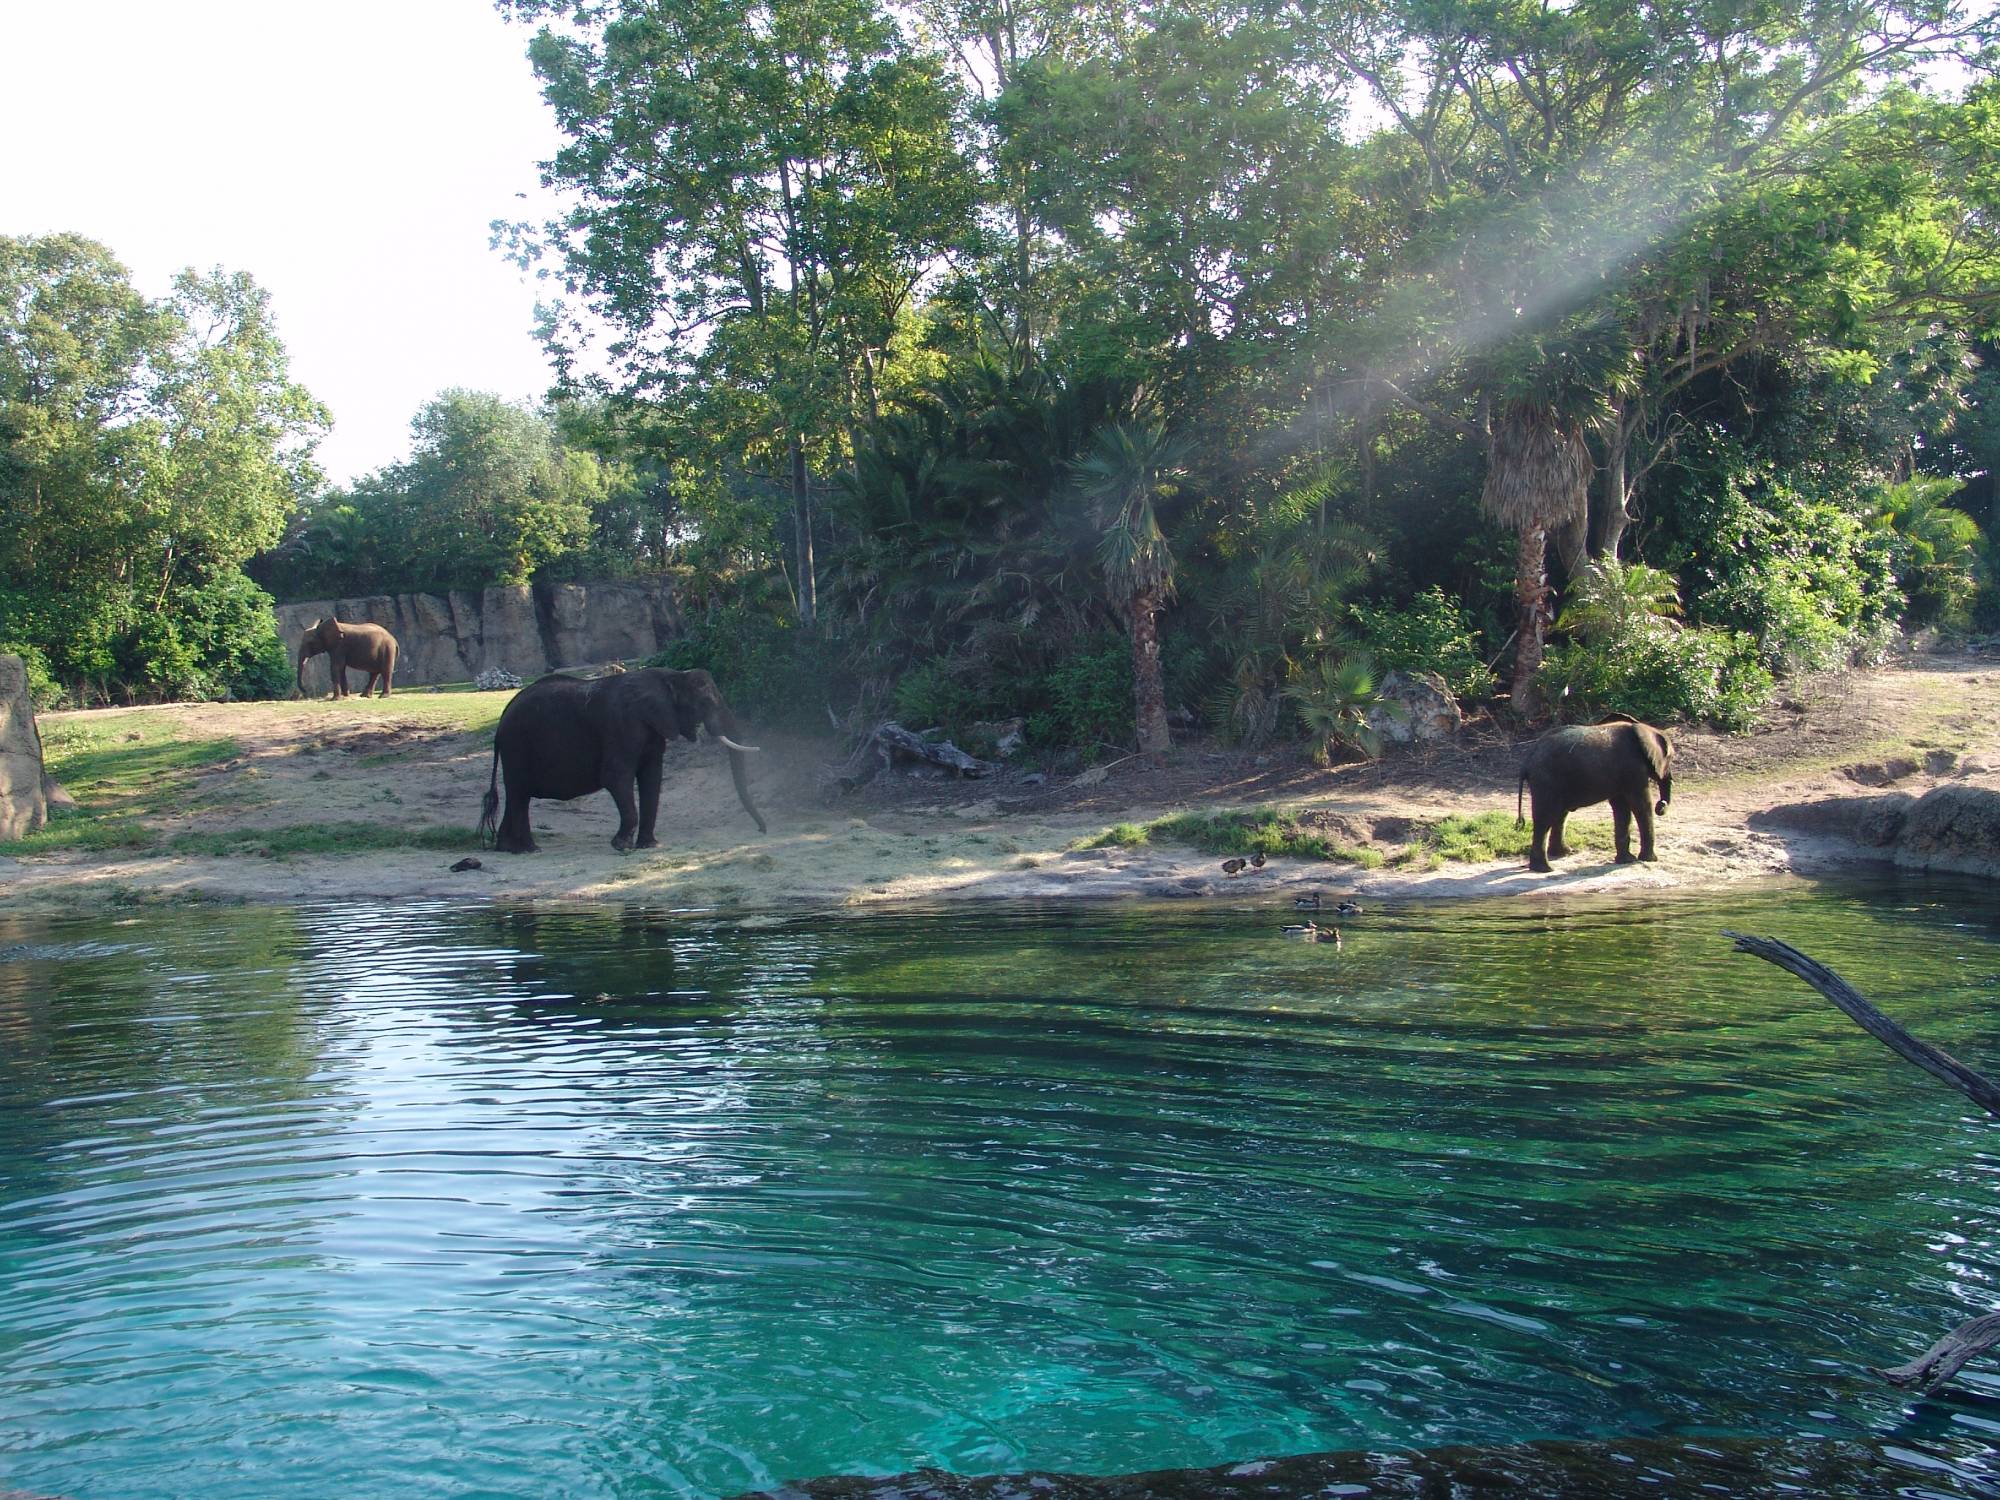 Animal Kingdom - elephants on safari